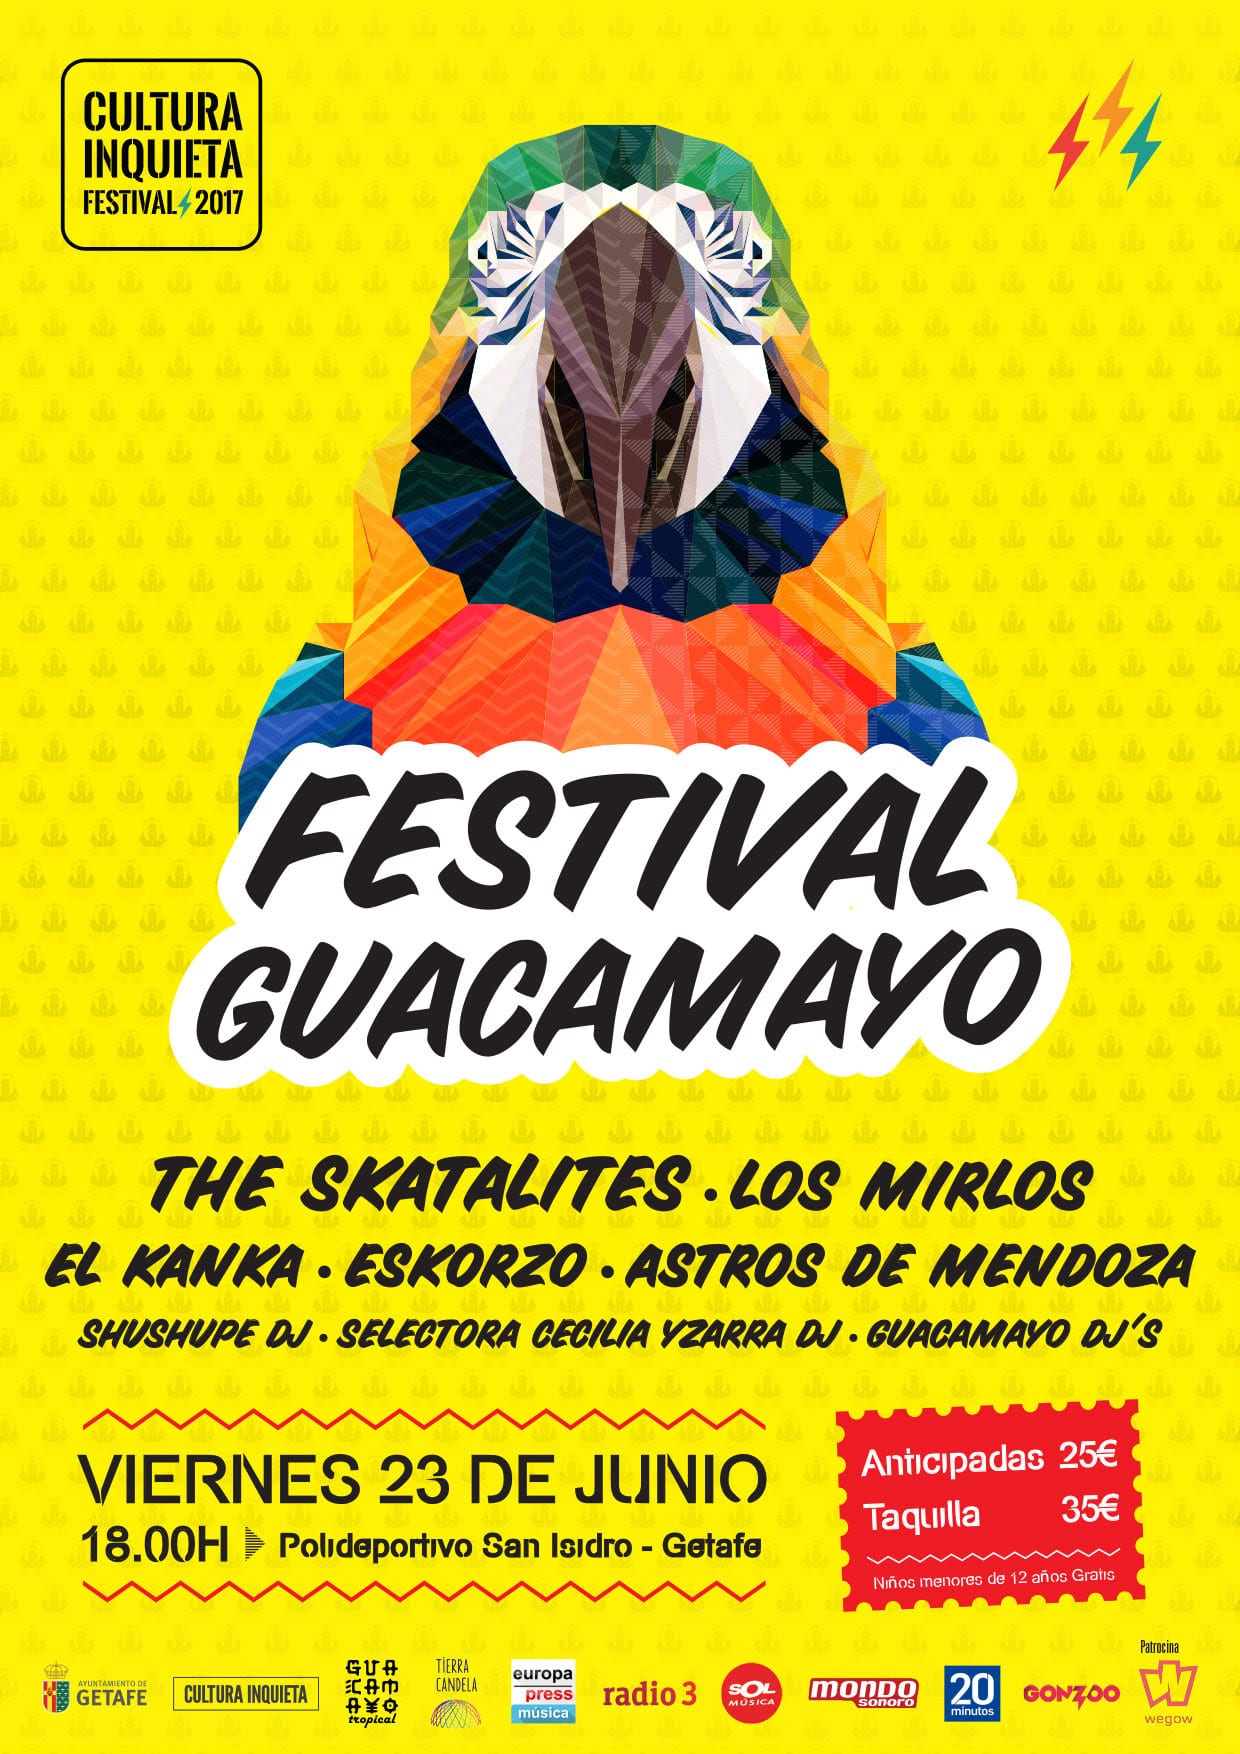 The Skatalites completa el Festival Guacamayo y queda cerrado así el cartel del Cultura Inquieta